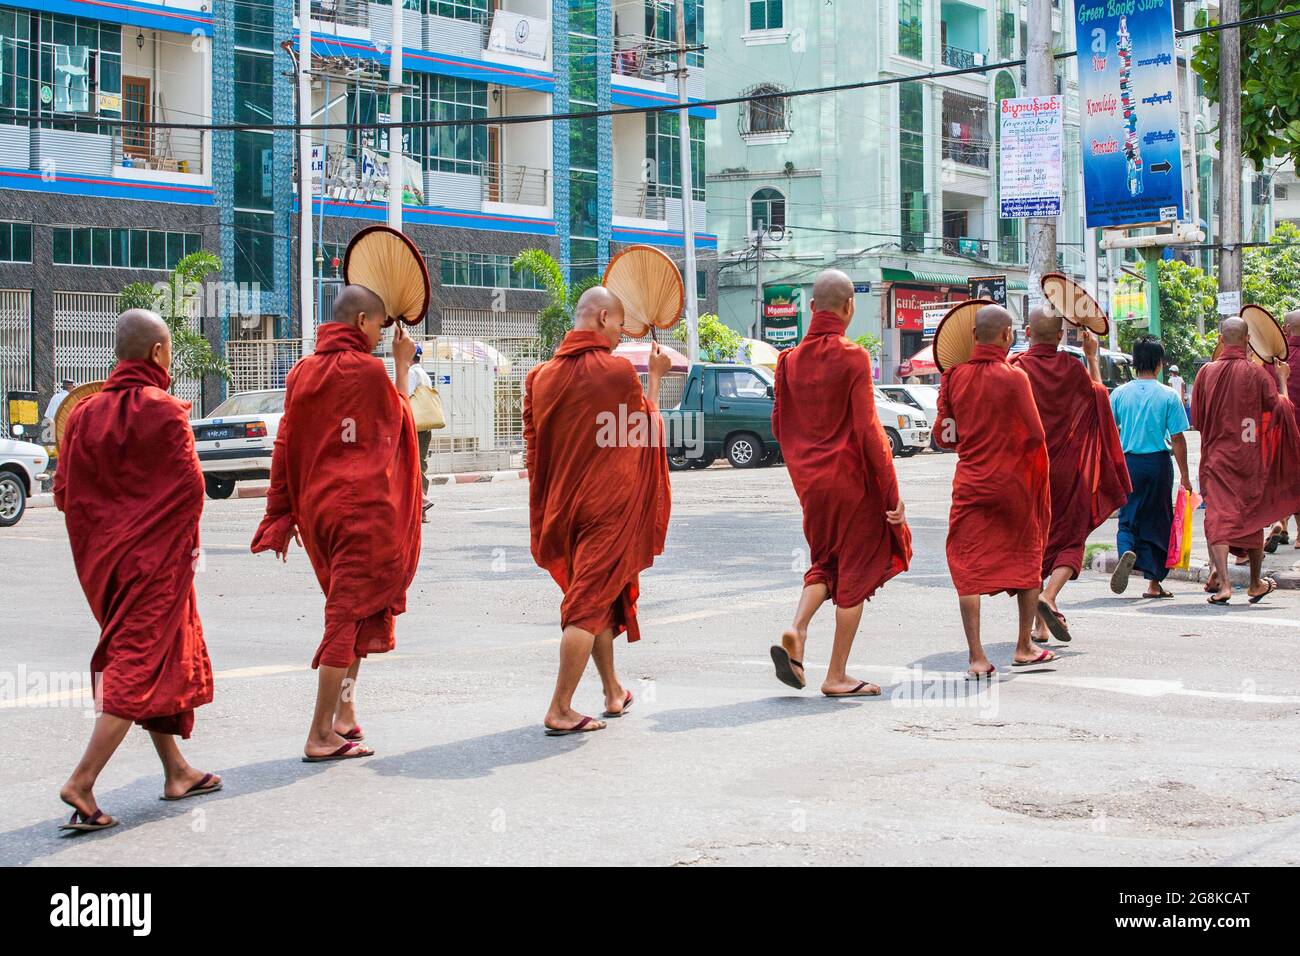 Groupe de Monks bouddhistes birmans portant des robes marron et marron traversant la rue, Yangon, Myanmar Banque D'Images